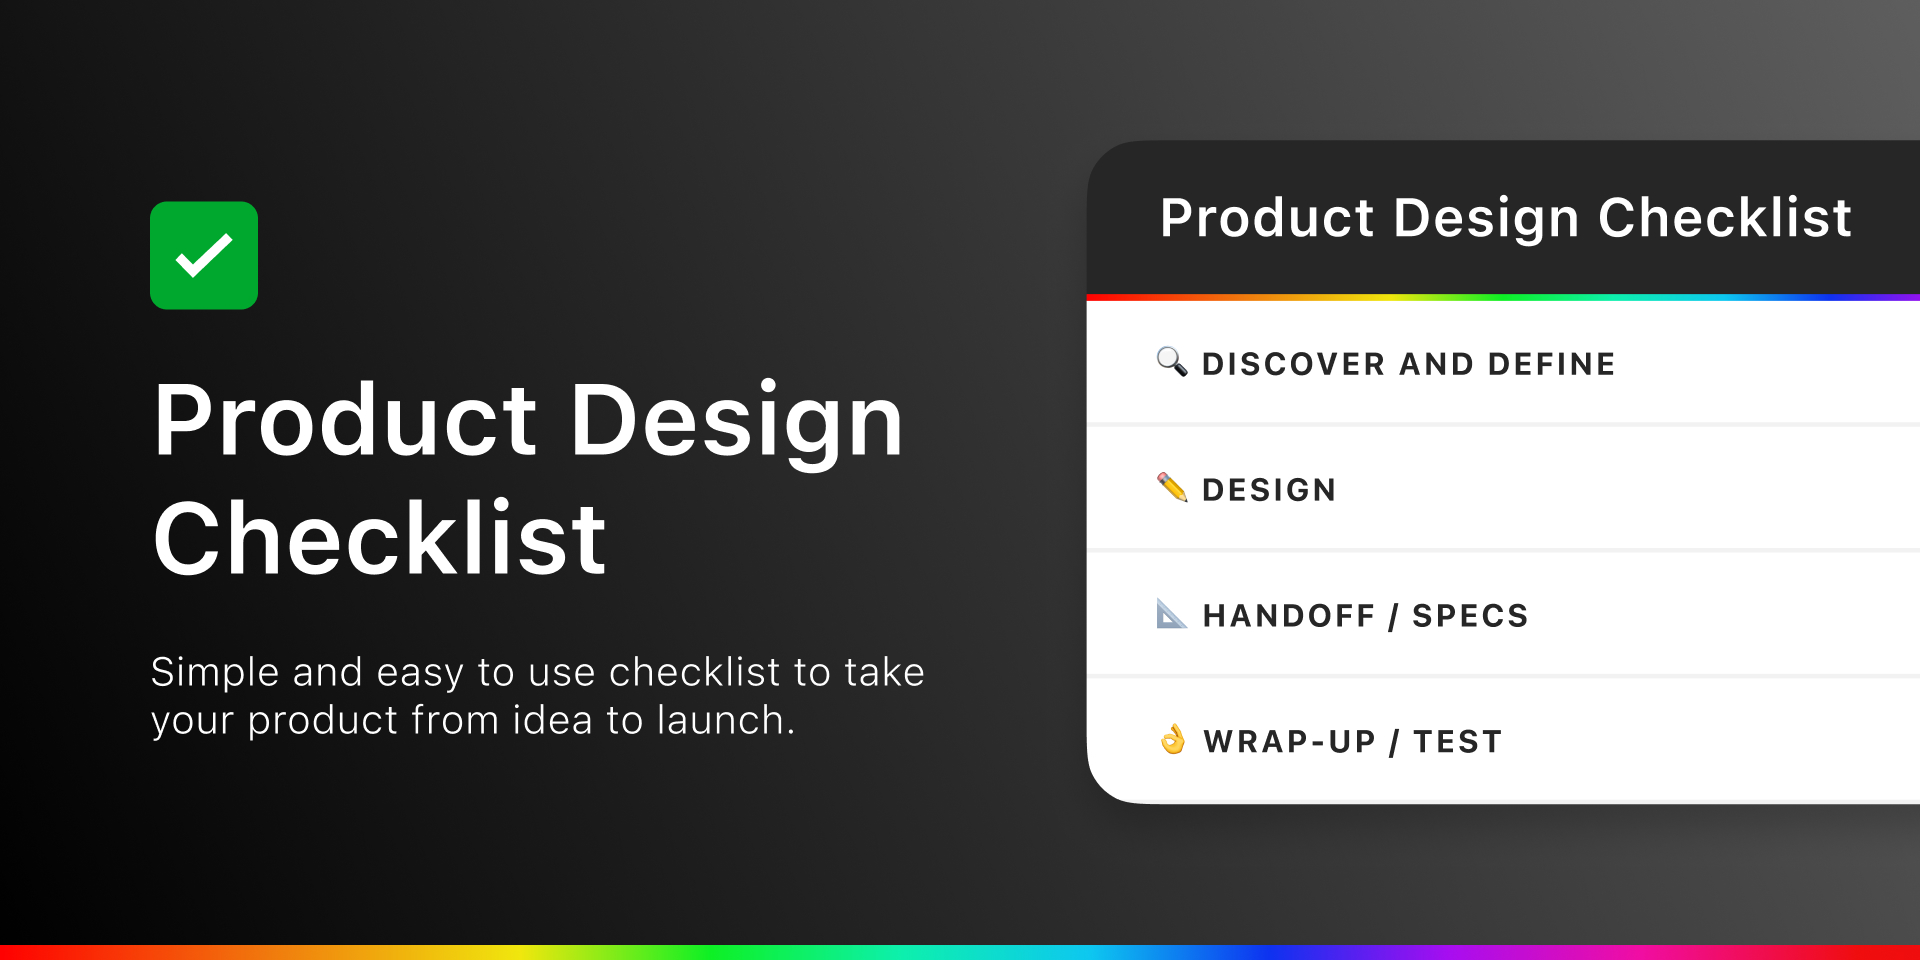 установить виджет для Фигмы Product Design Checklist